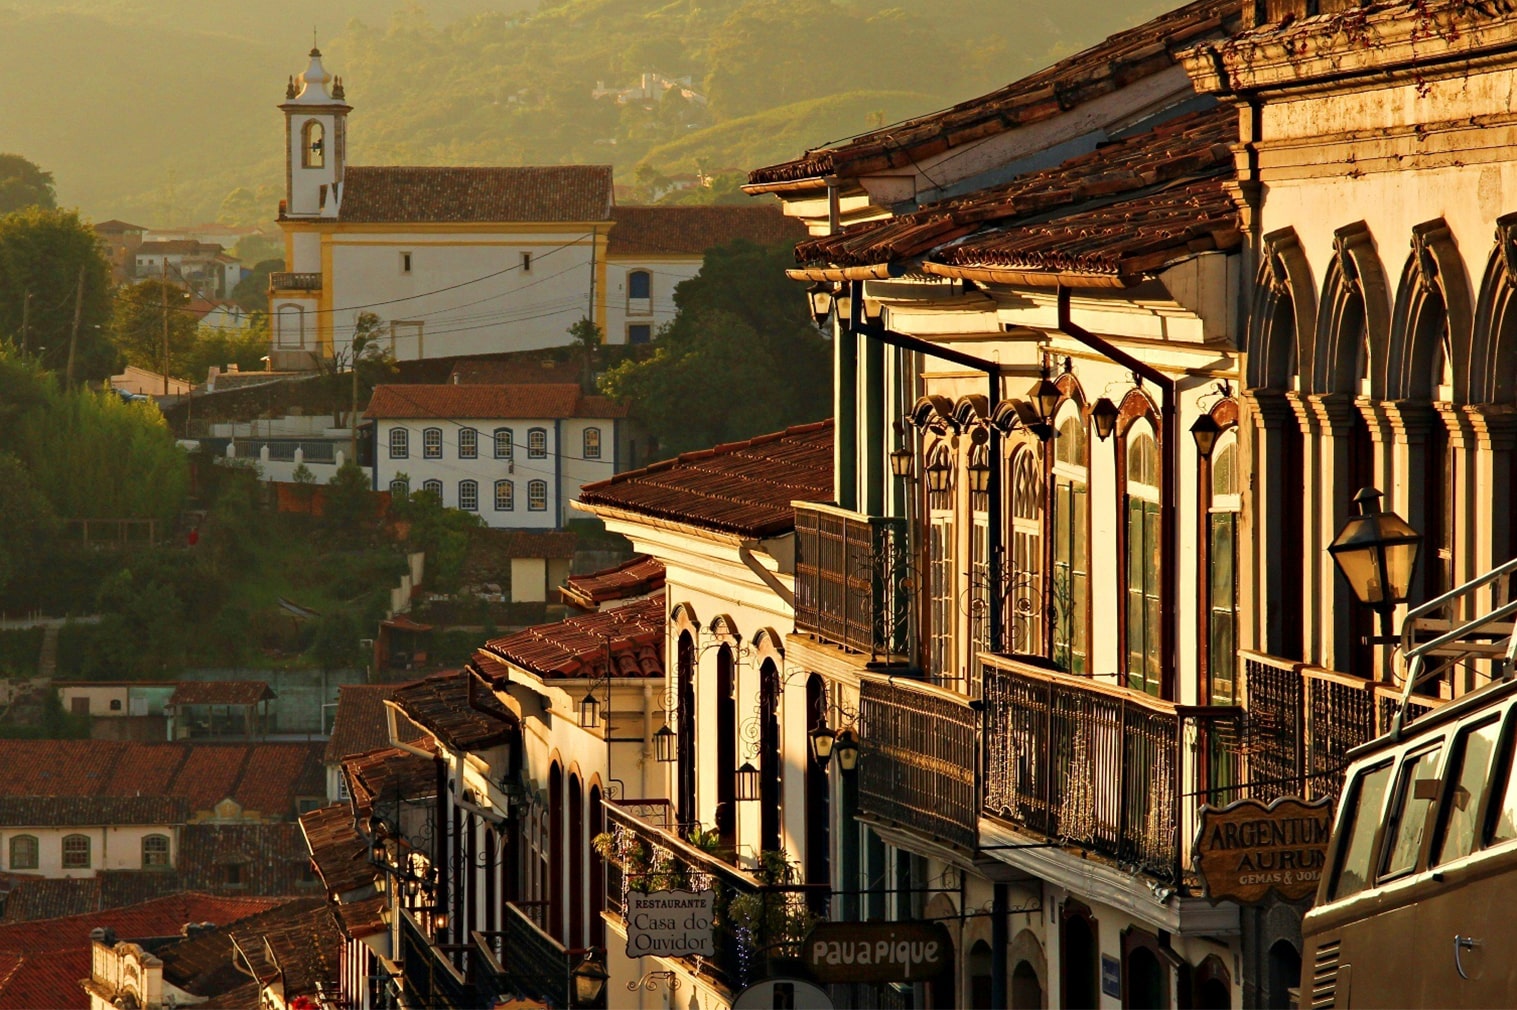 Ouro Preto 